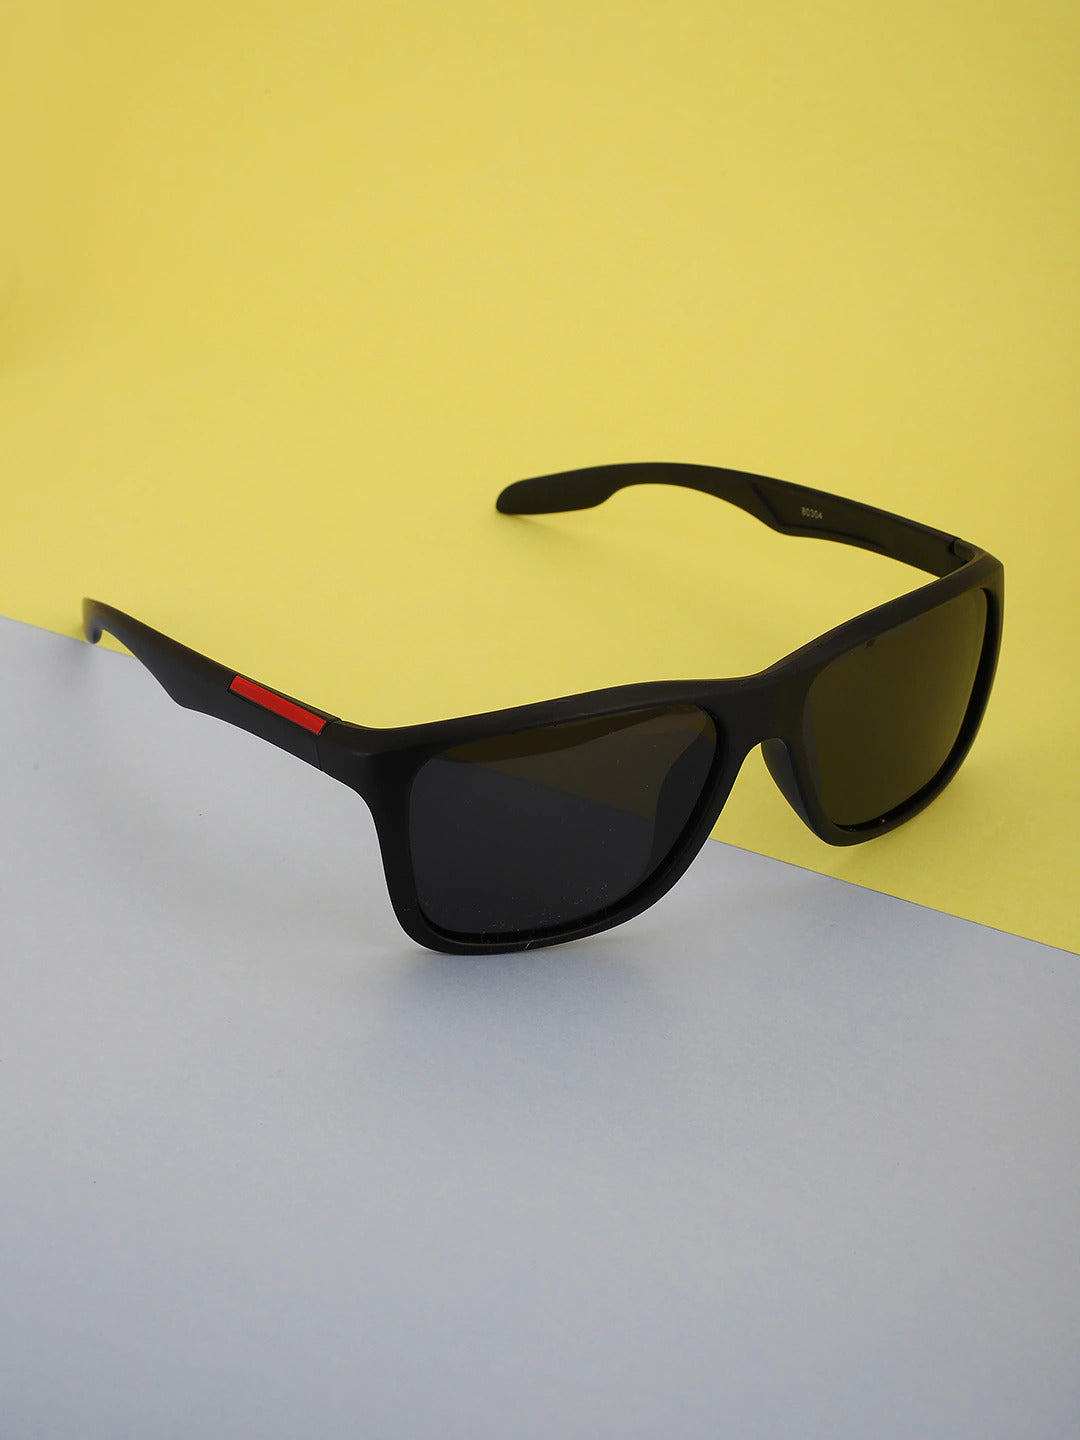 Carlton London Square Uv Protected Rectangle Sunglasses For Men